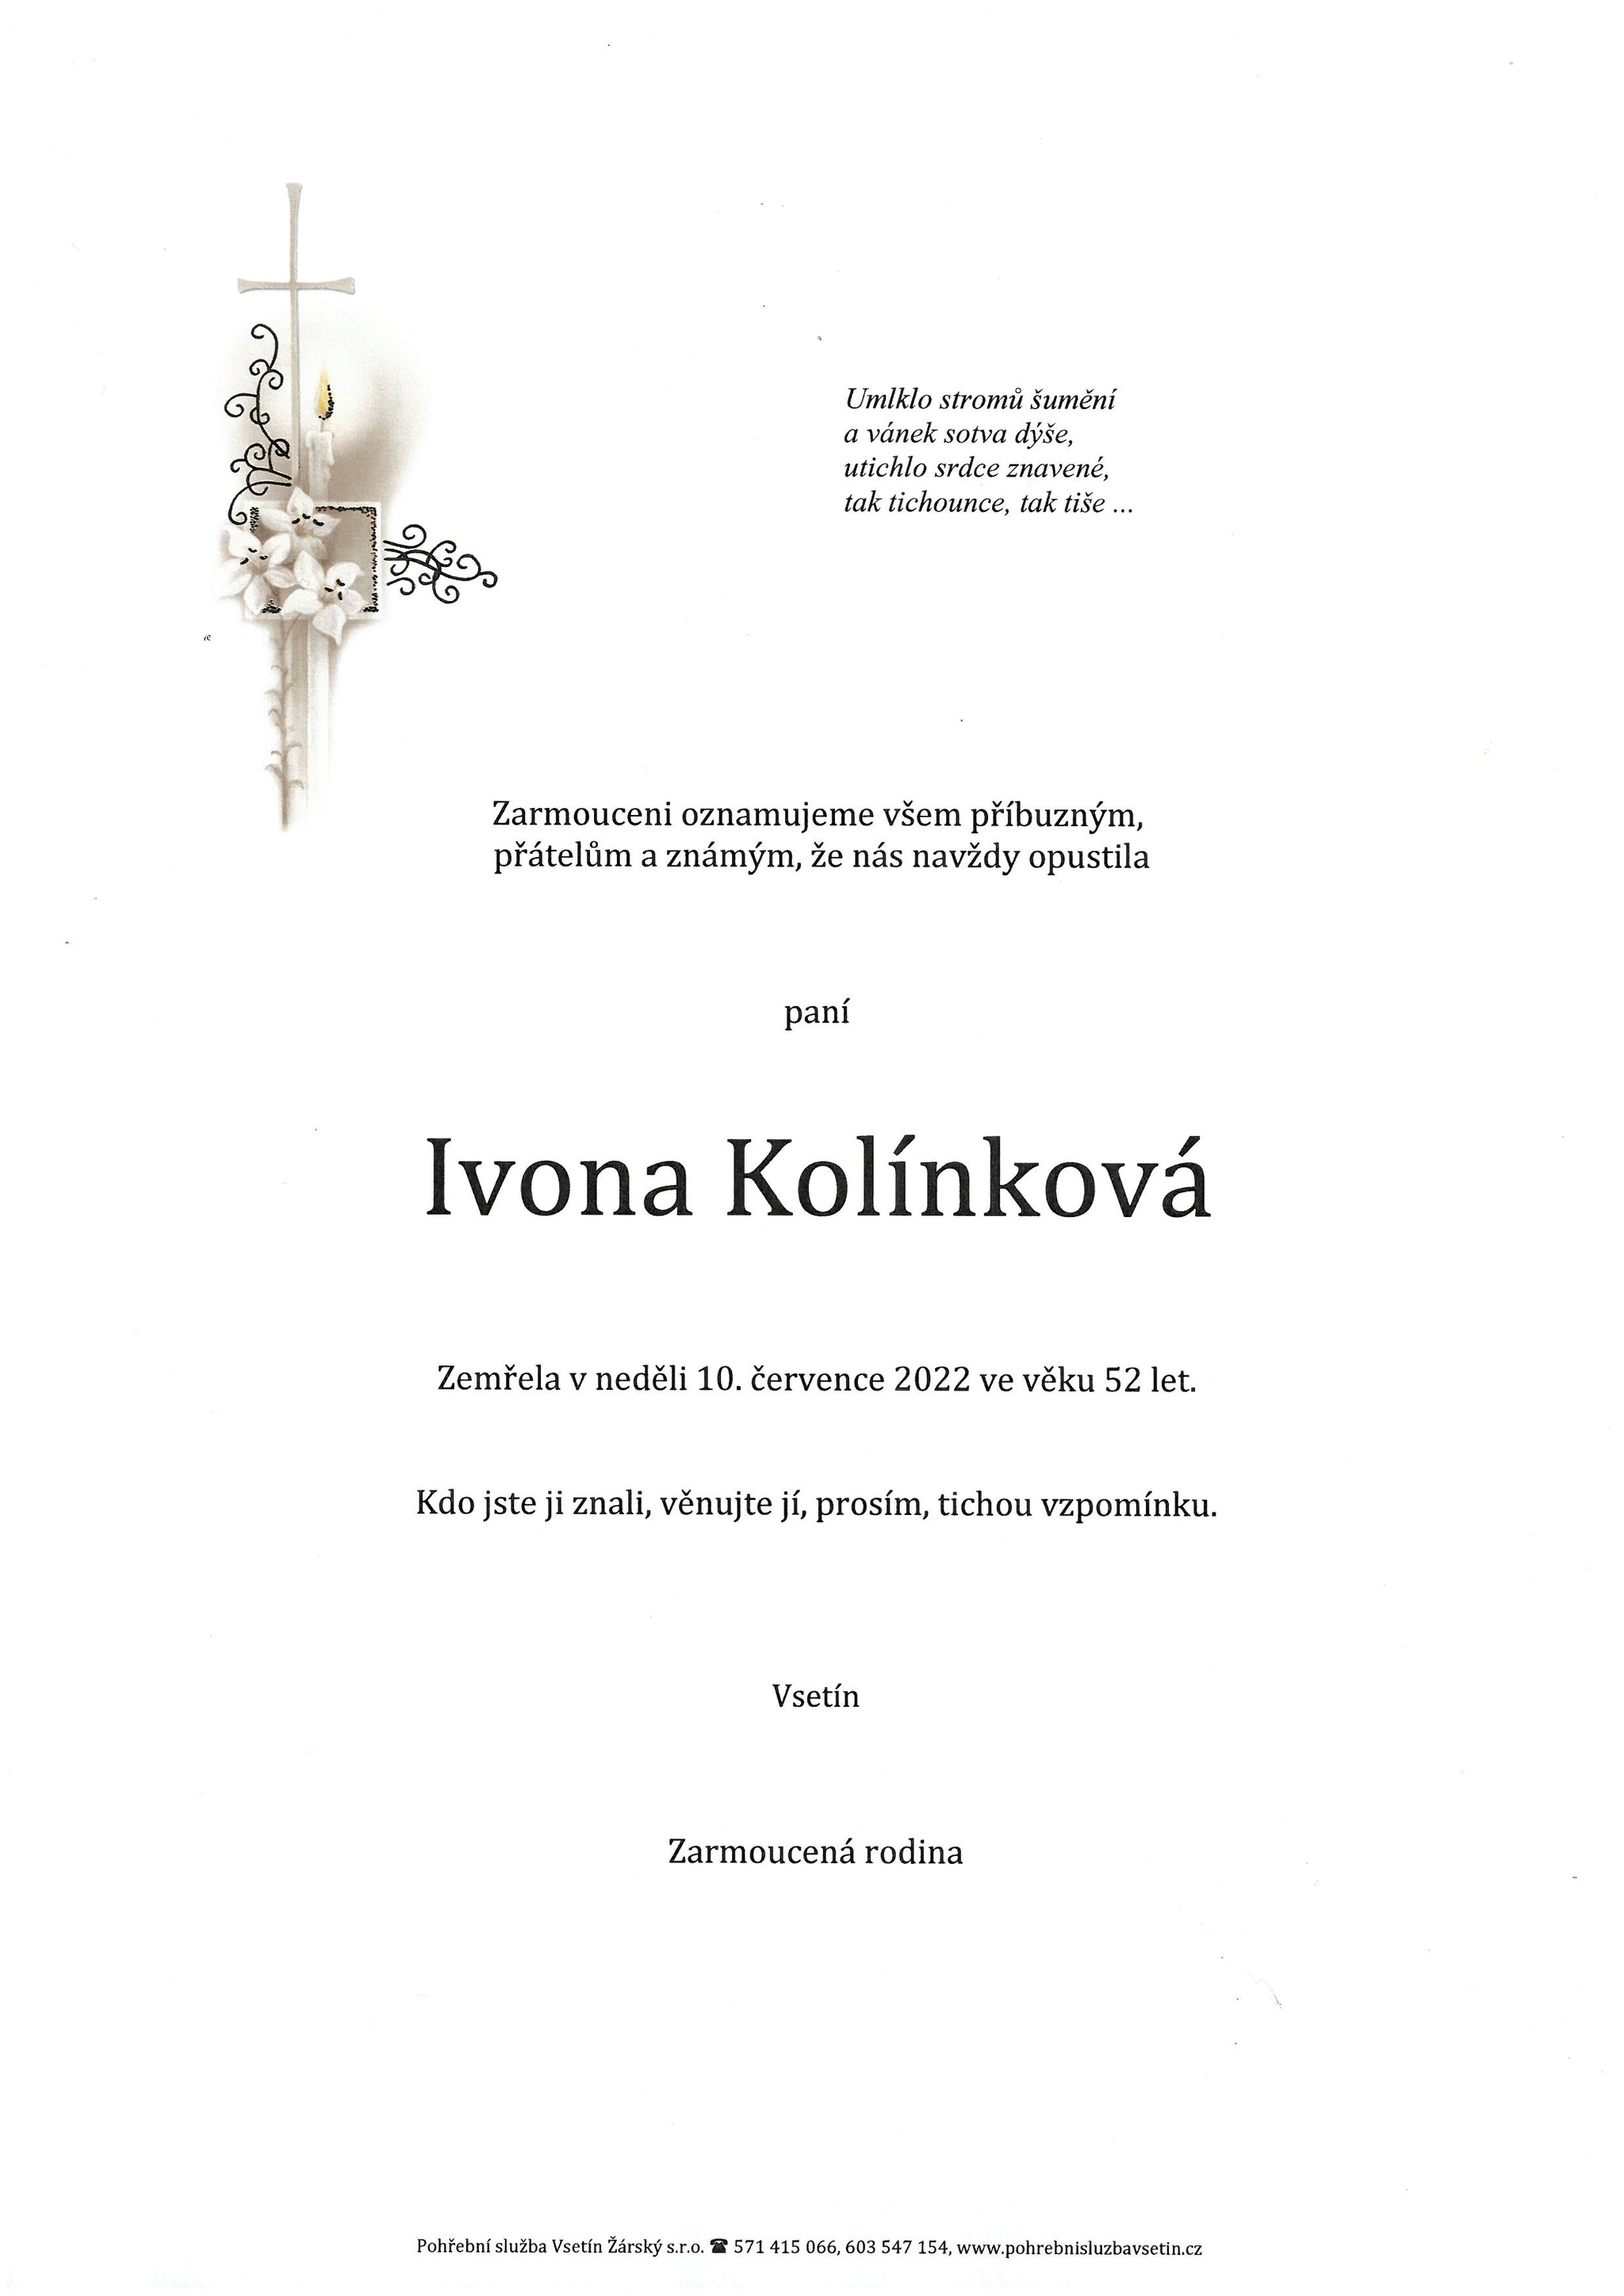 Ivona Kolínková